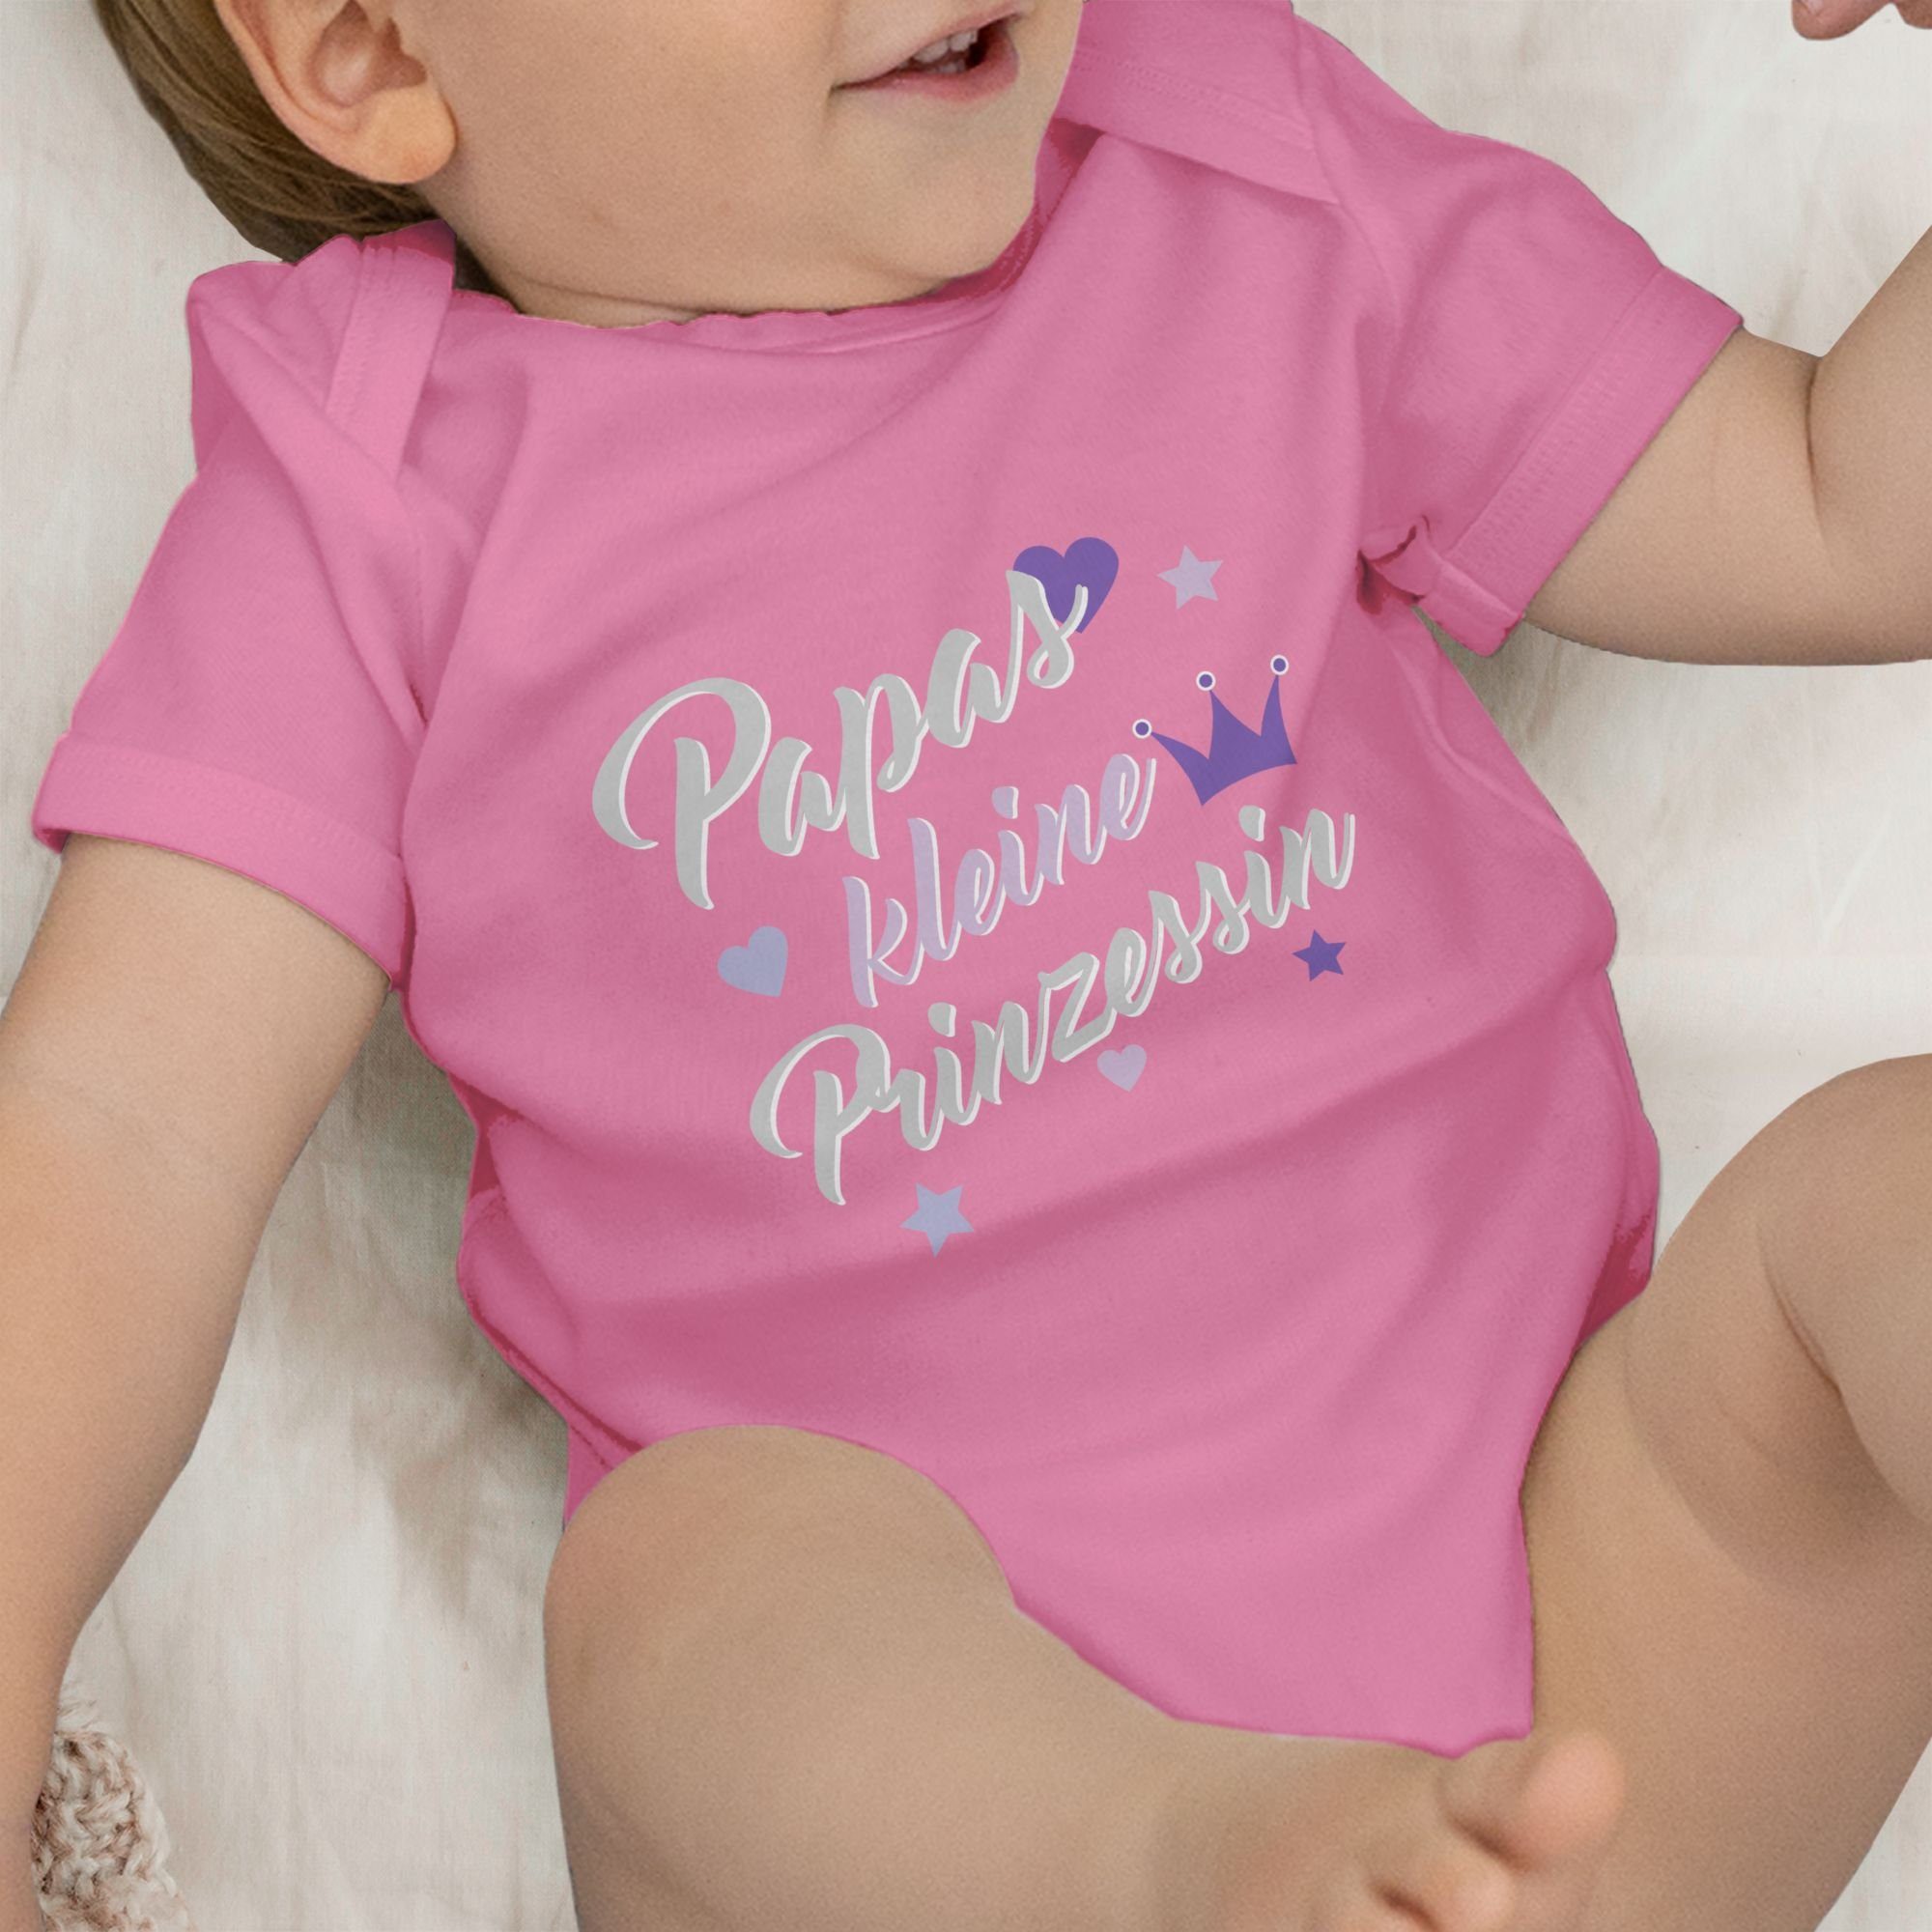 Pink Geschenk Shirtbody Vatertag 2 Baby Shirtracer Papas Prinzessin kleine